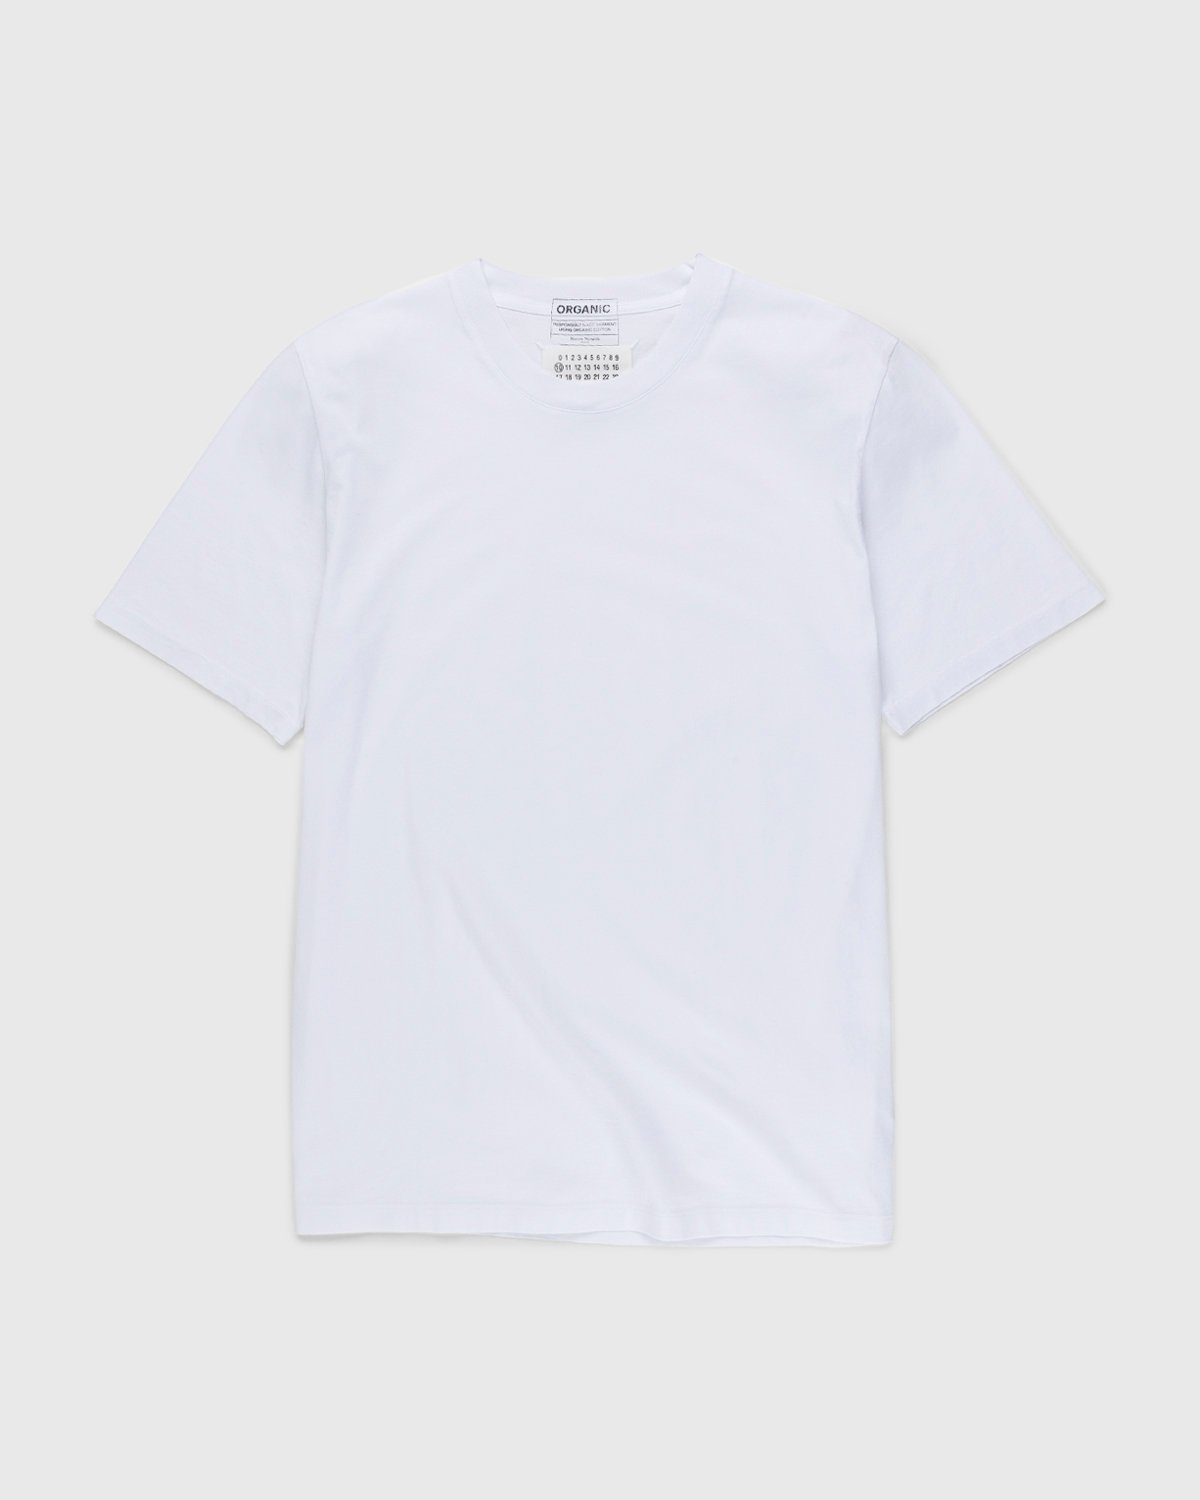 Maison Margiela - Shades of White T-Shirts 3 Pack Multi - Clothing - White - Image 2